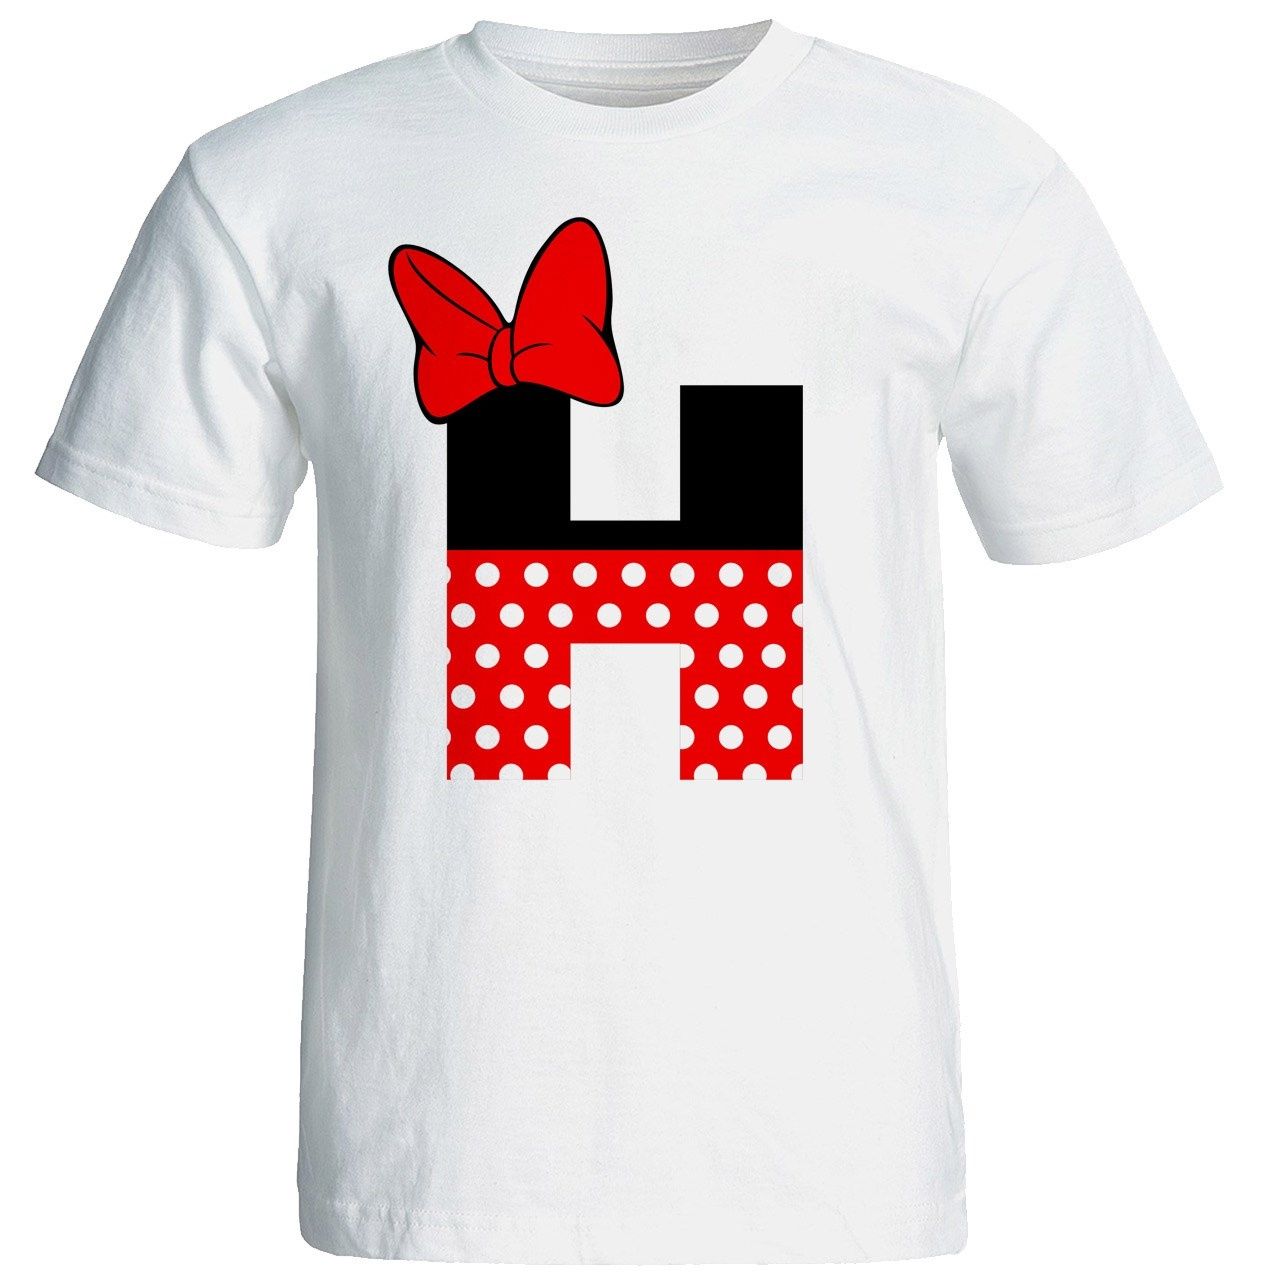 تی شرت آستین کوتاه زنانه شین دیزاین طرح میکی موس H کد 4532 -  - 1